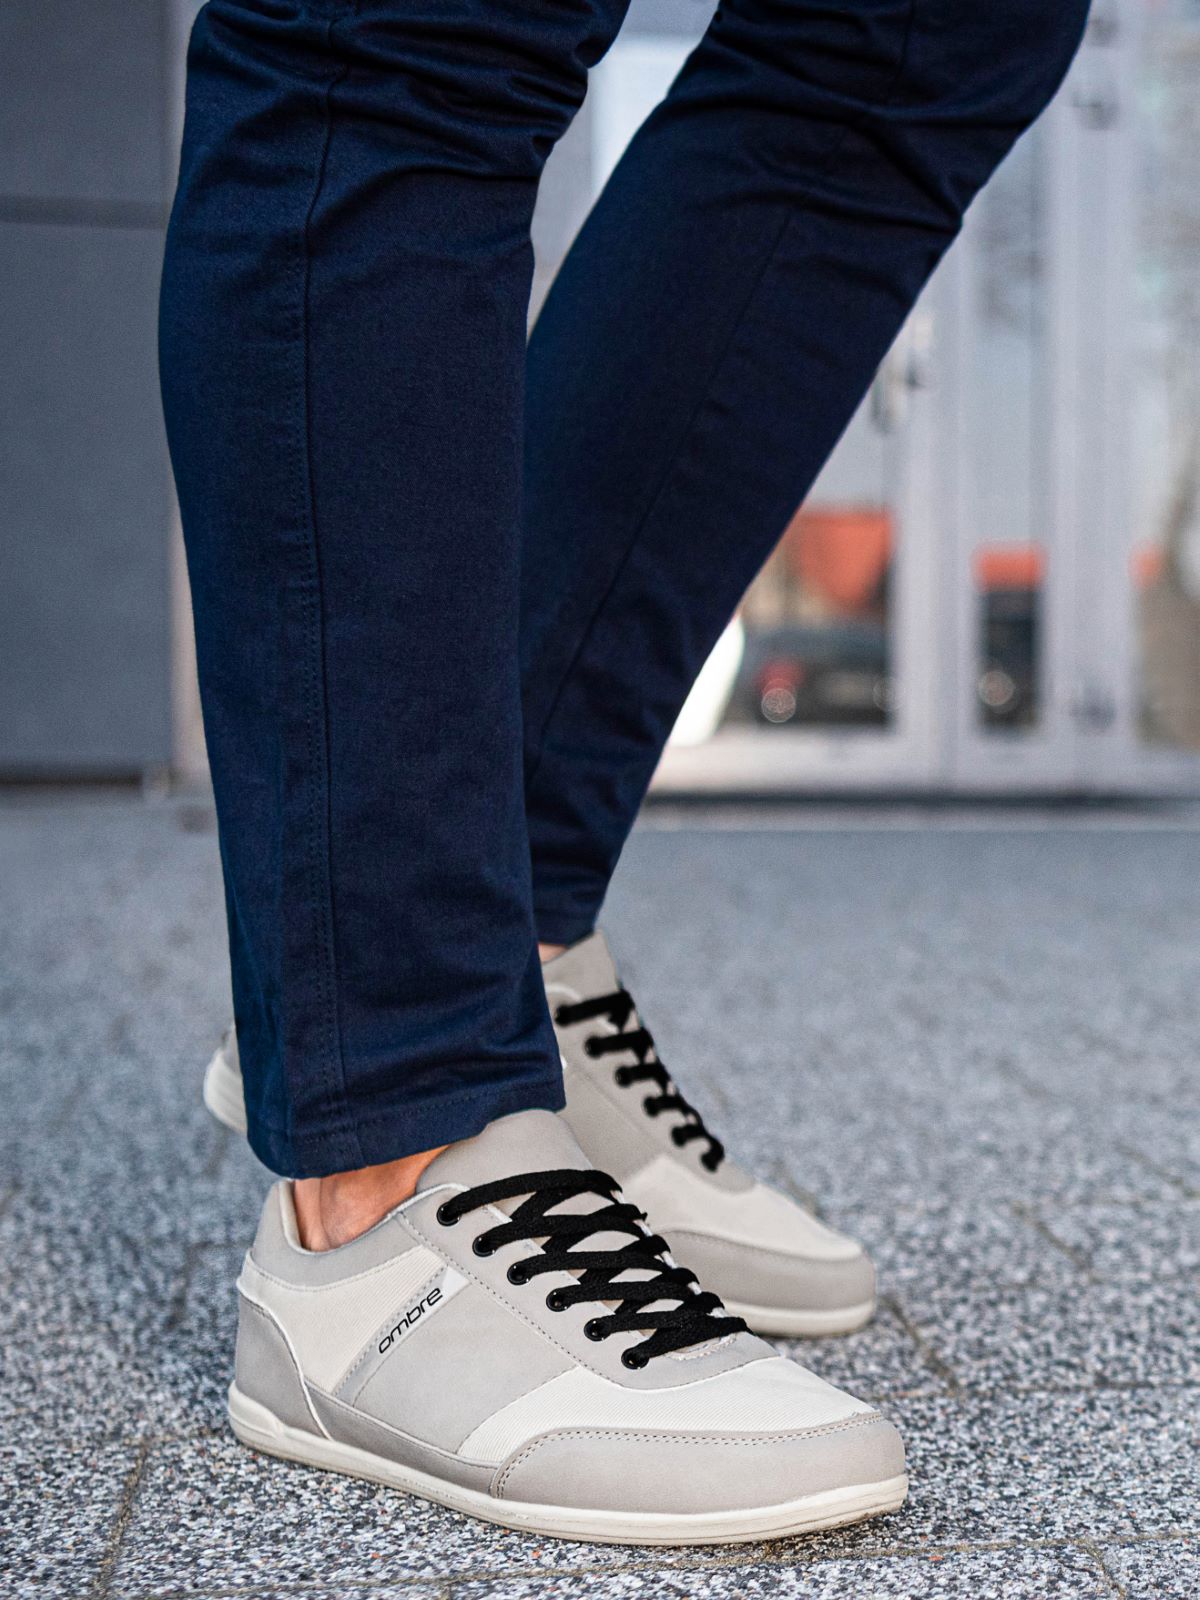 mens grey casual sneakers